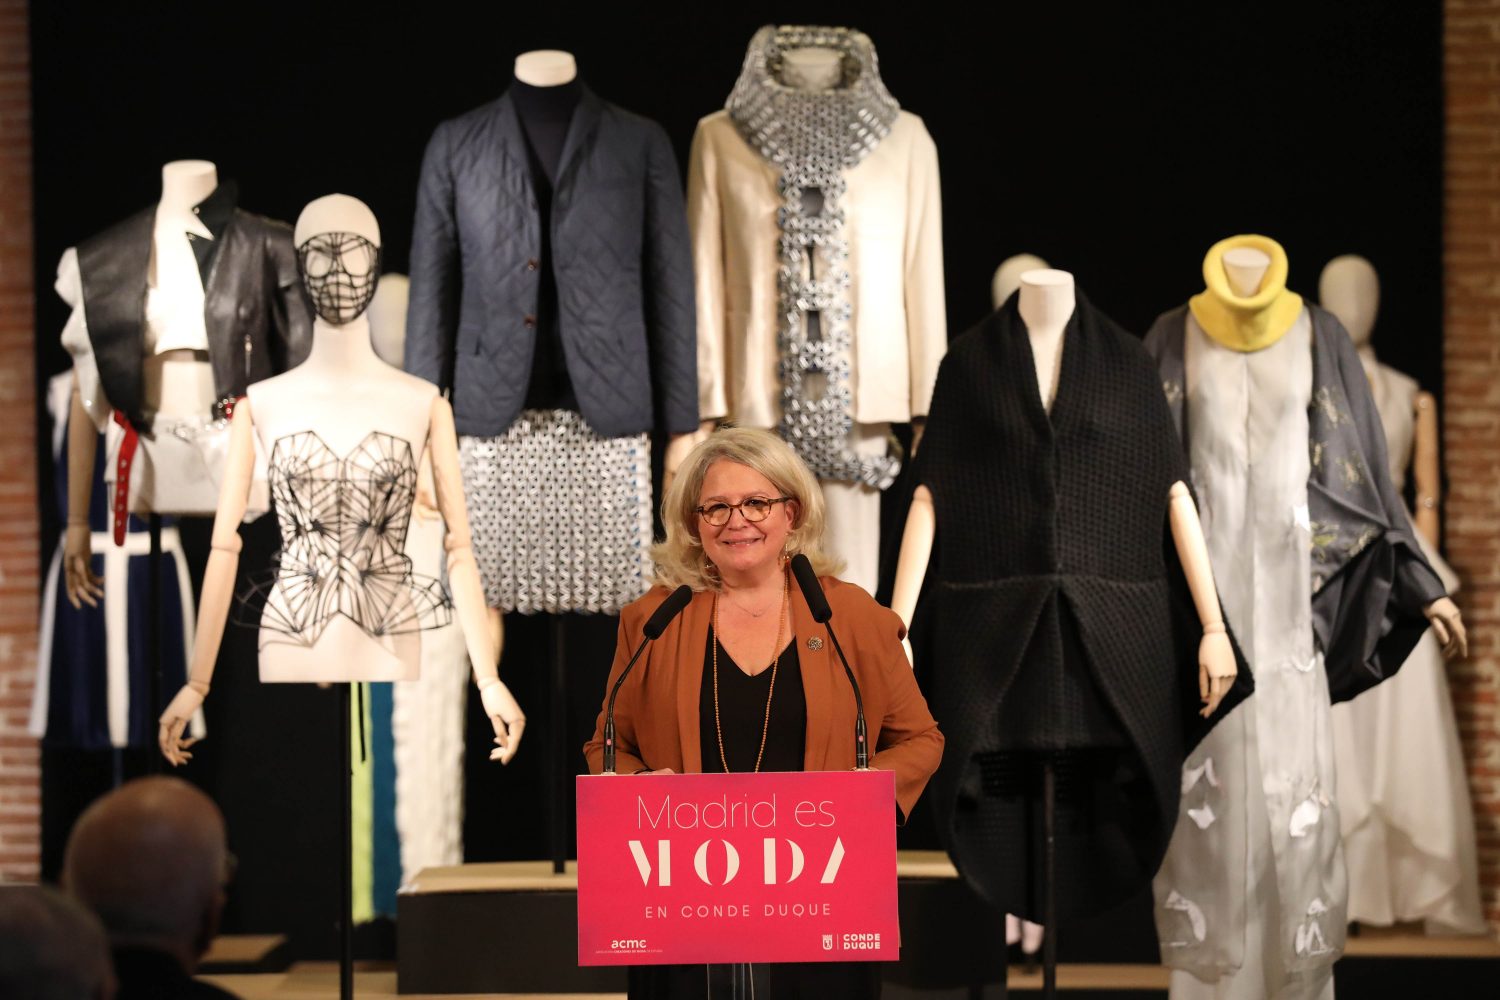 La imagen muestra una mujer presentando unos diseños de moda.